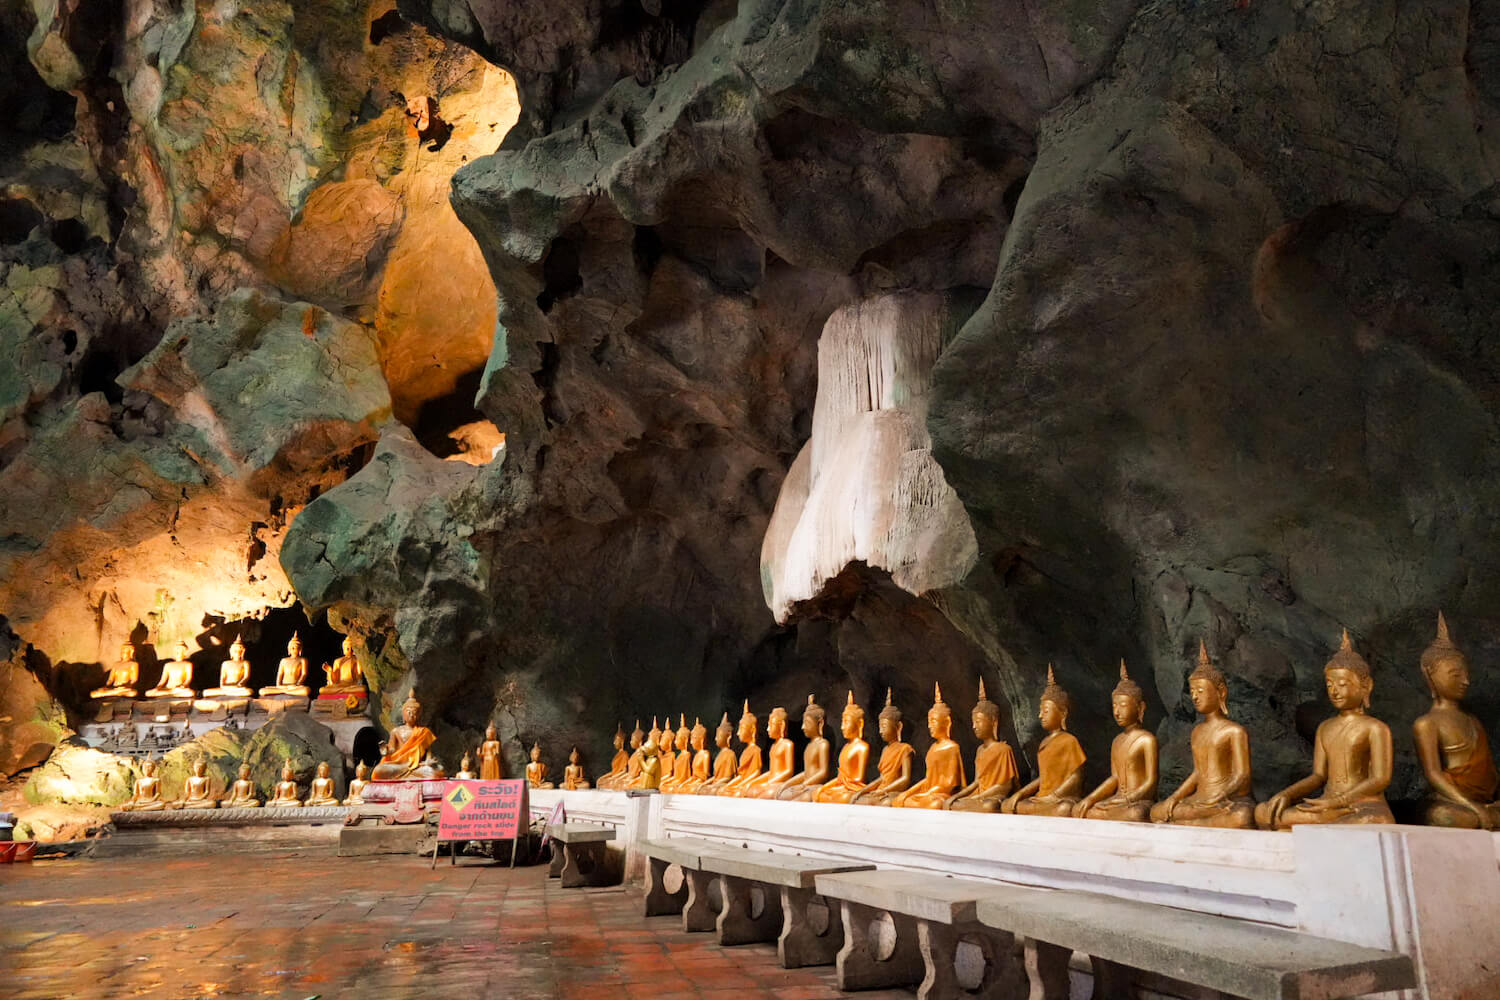 洞窟寺院内に立ち並ぶ仏像